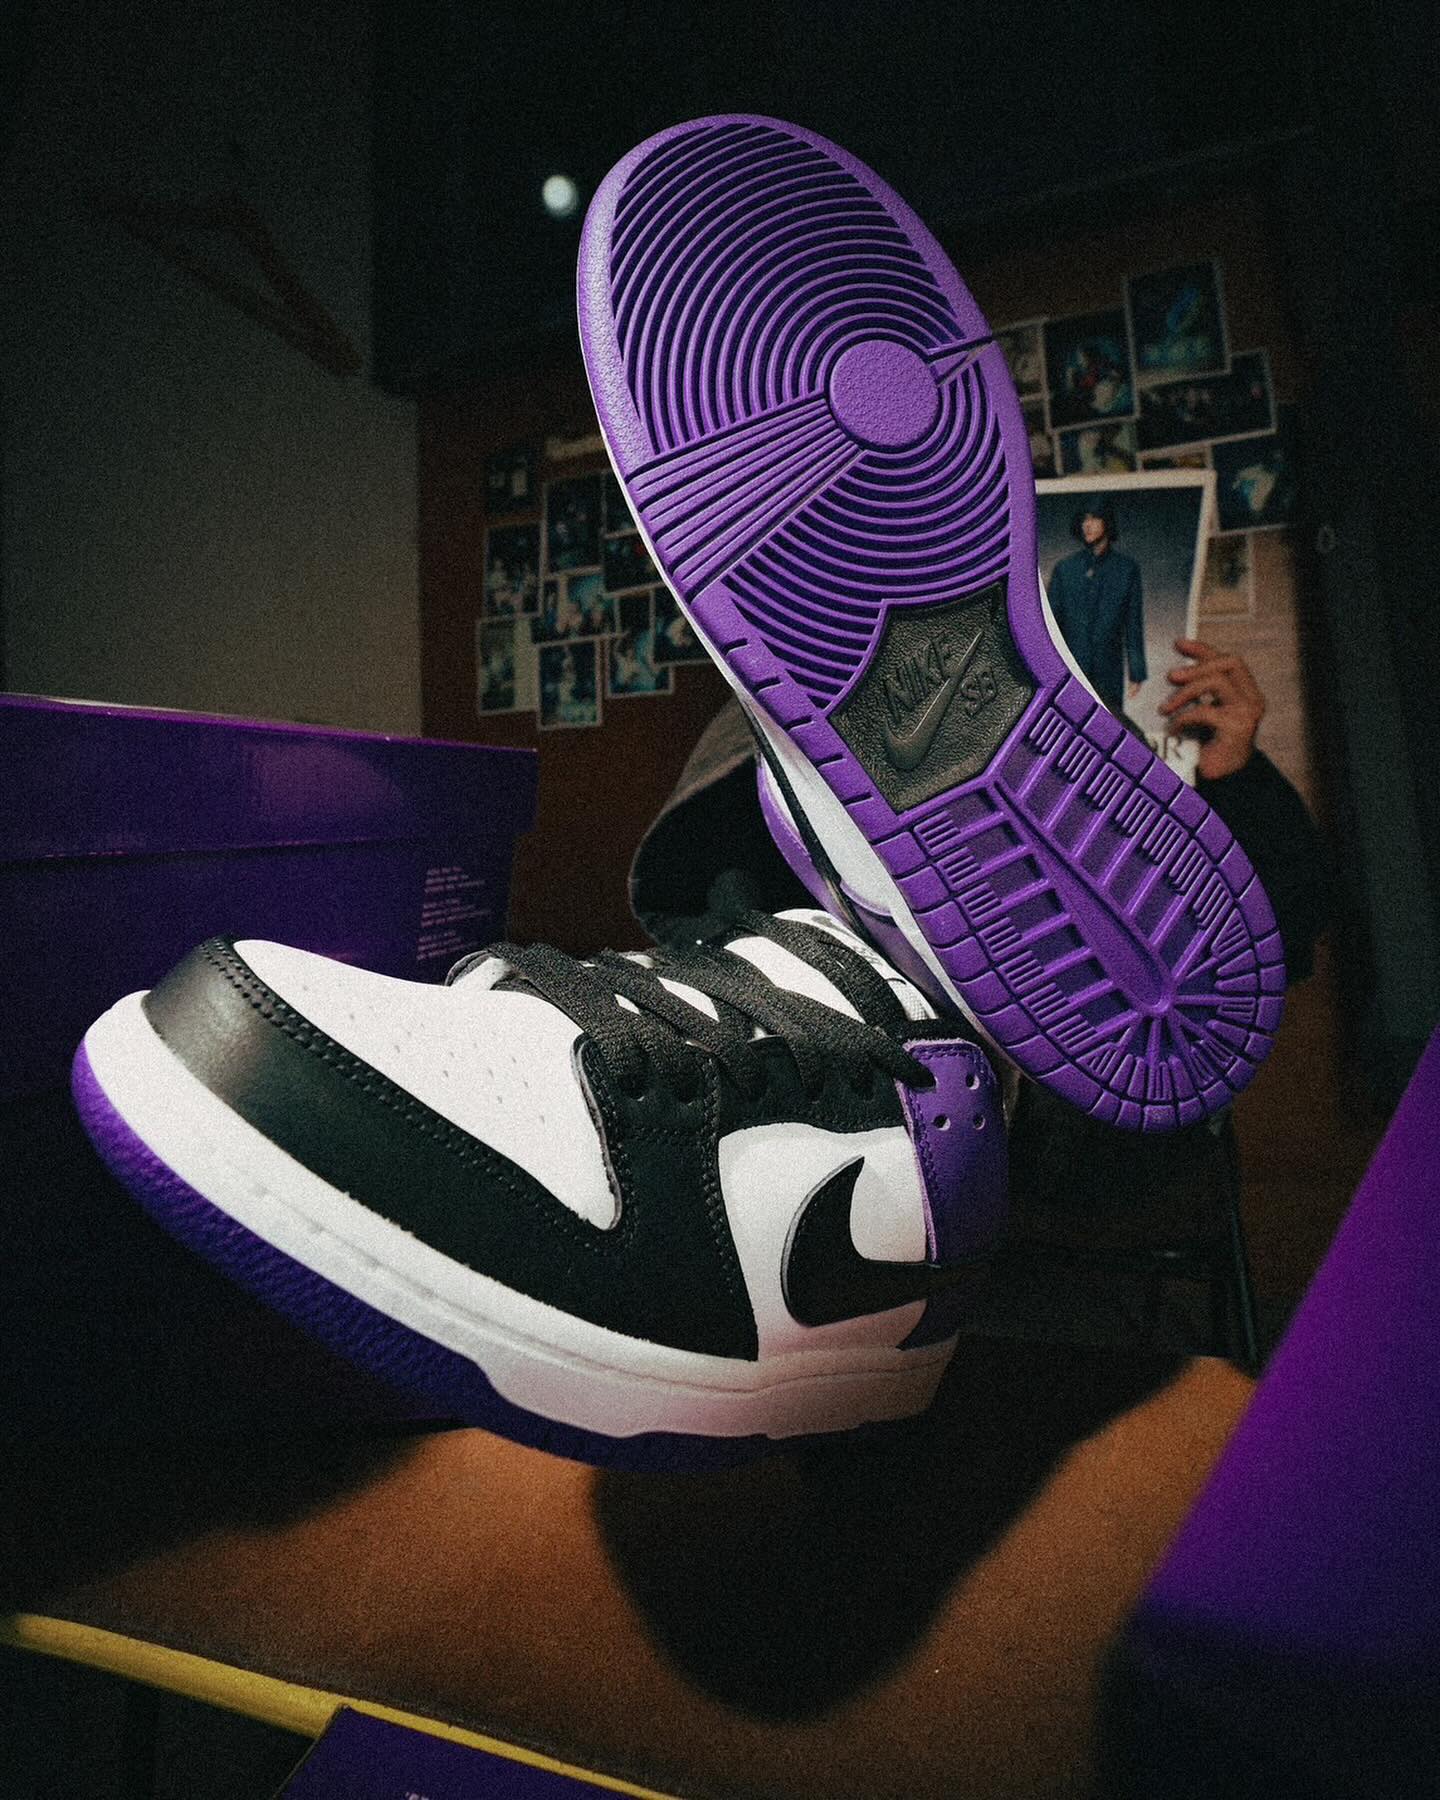 1月21日(日)発売 Nike SB Dunk Low Pro "Court Purple"&"Black & White Collection" 85年にNCAAに向けたカレッジカラープログラムでリリースされた"ホワイト/バーシティーパープル"を彷彿とさせる"Court Purple"と普遍的なカラーリングが人気のDunk Low Pro "Black & White Collection"がまもなく同時発売！販売方法に関してはプロフィールリンク先のブログをご確認下さい。※浦安ストアでの販売はございません。※販売足数、入荷サイズ、発売前のご予約など販売に関する事前お問い合わせはご遠慮下さい。※no overseas shipment.#nikesb@nikesbdojo#Instantskateshop#instantskateboards